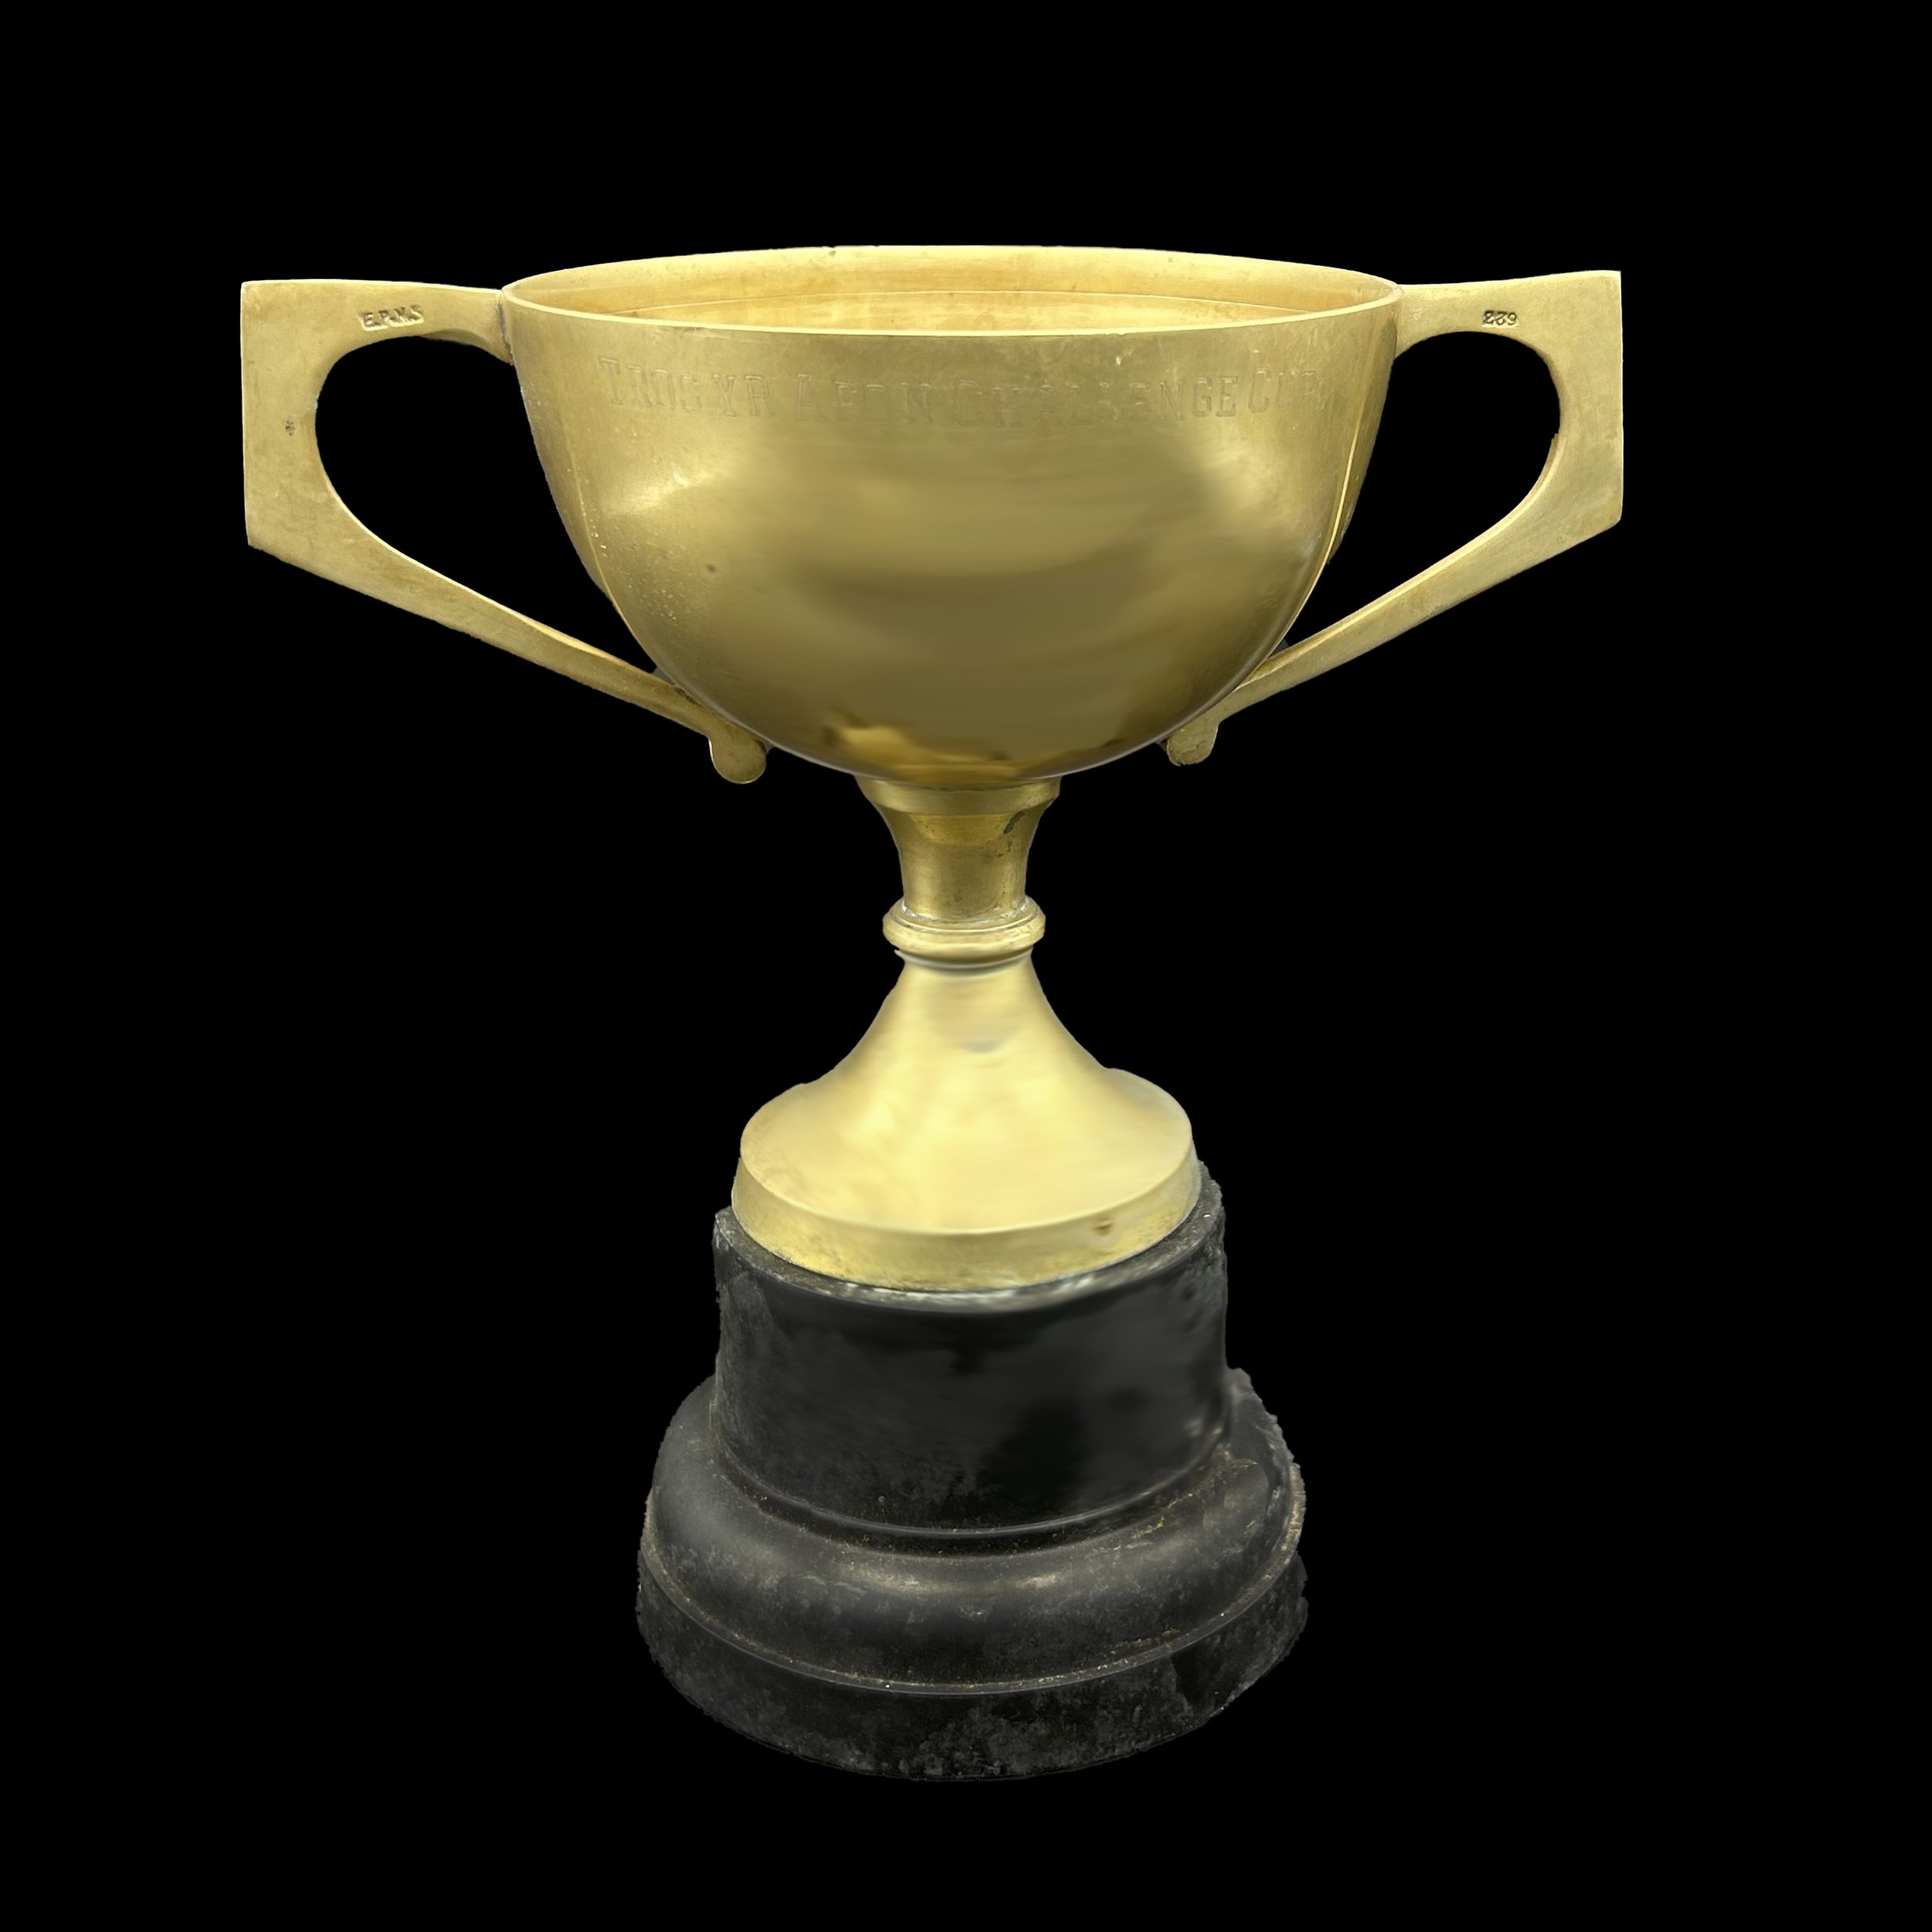 Tros yr Afon Challenge Cup